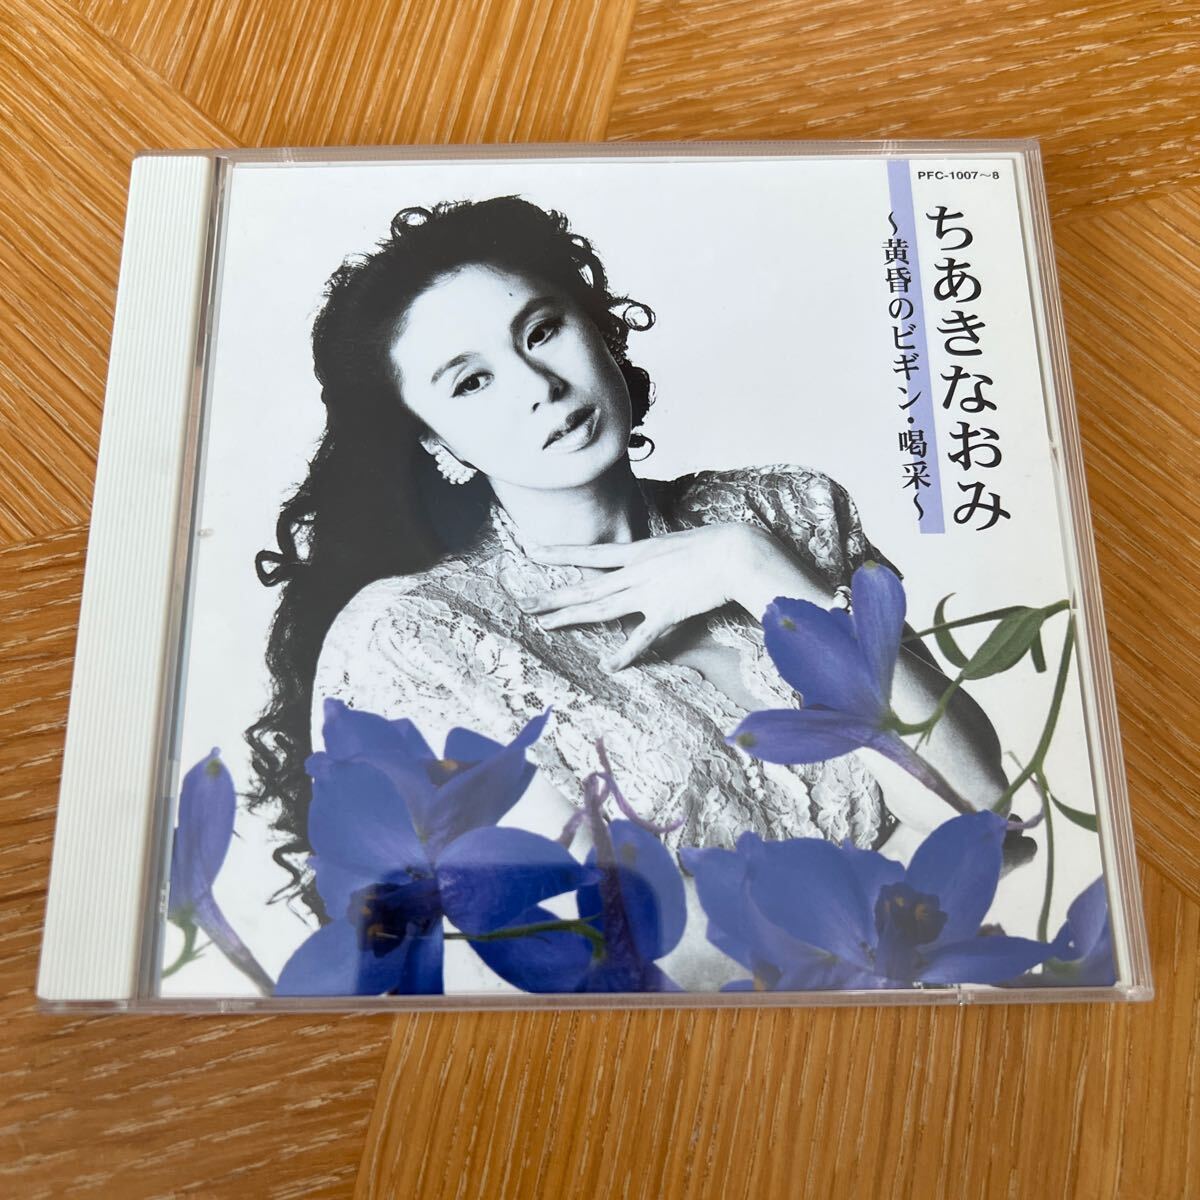 ちあきなおみ 〜黄昏のビギン喝采〜 2CD 2002年 テイチク 廃盤 全24曲 美品 オビなしの画像1